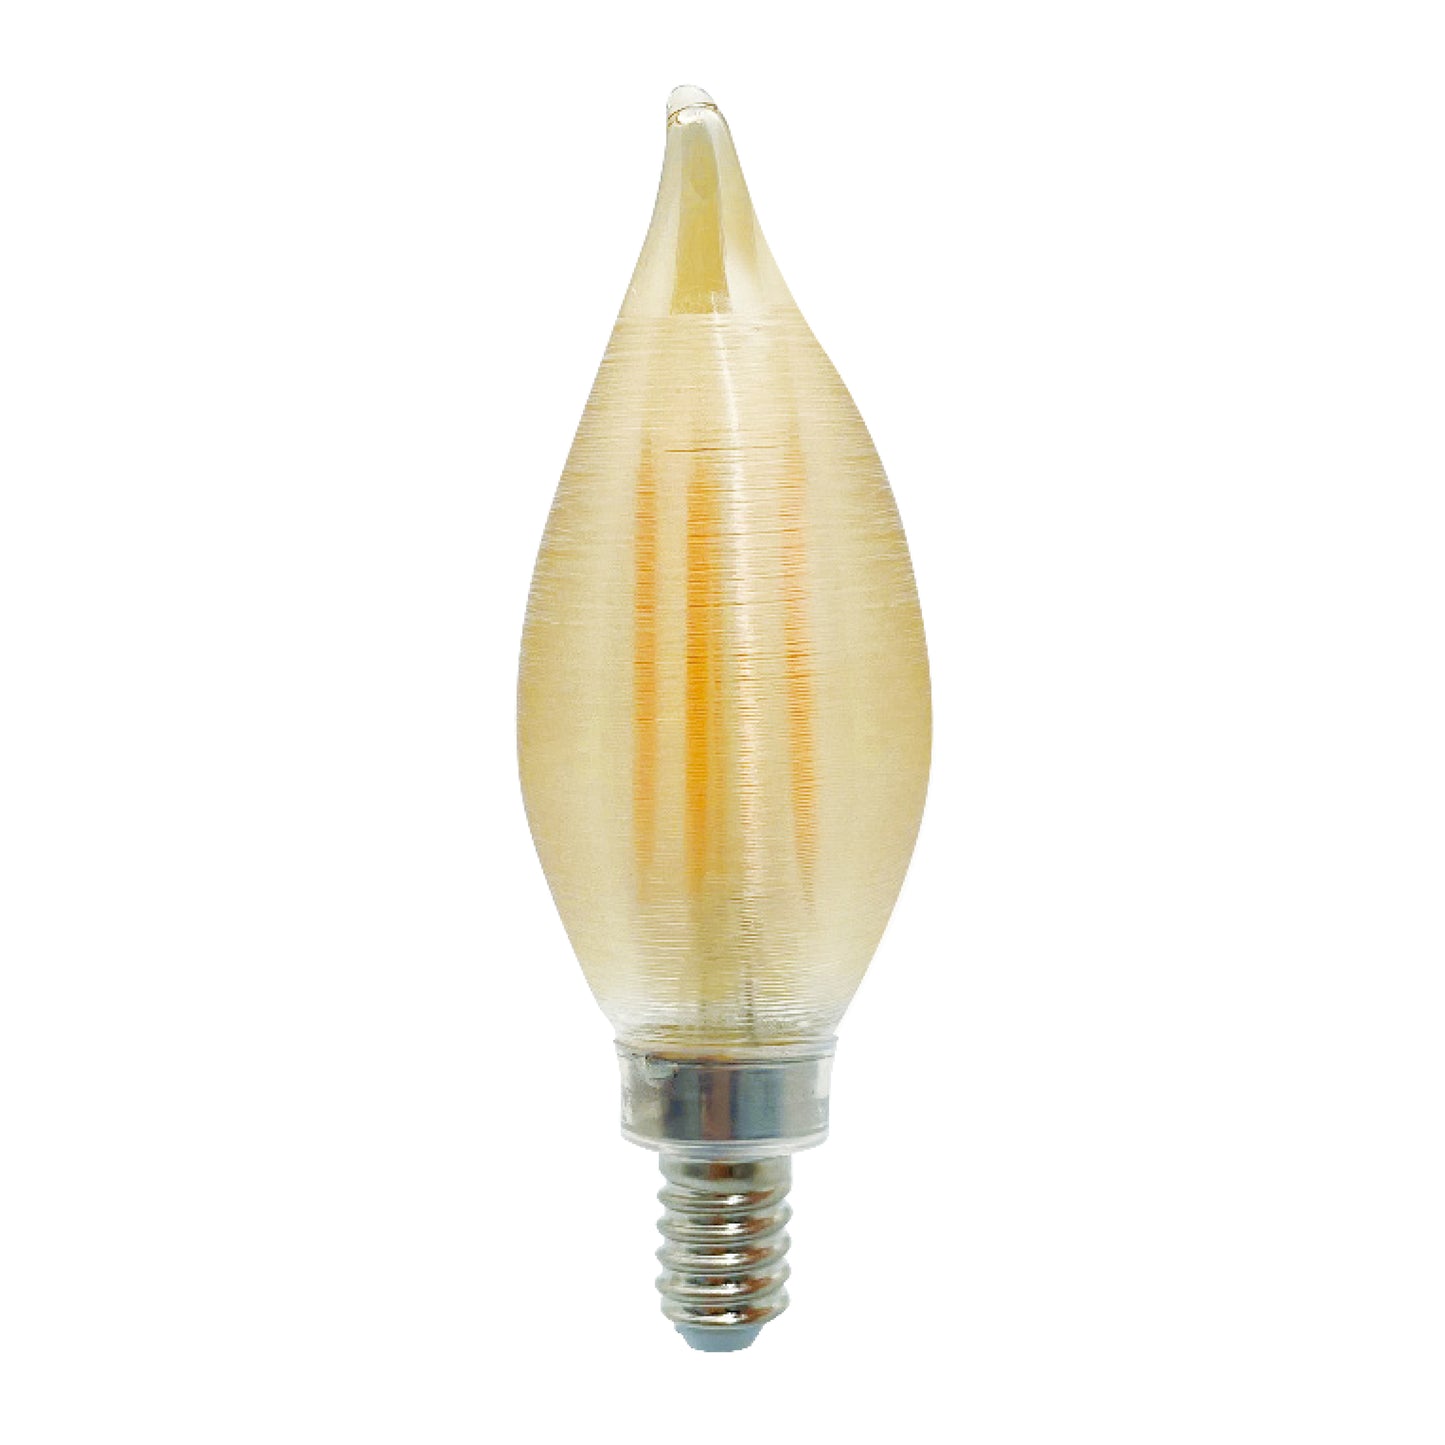 Bulbrite Spunlite 4 Watt Dimmable C11 LED Filament Light Bulb with Amber Glass Finish and Candelabra (E12) Base - 2100K (Amber Light), 250 Lumens